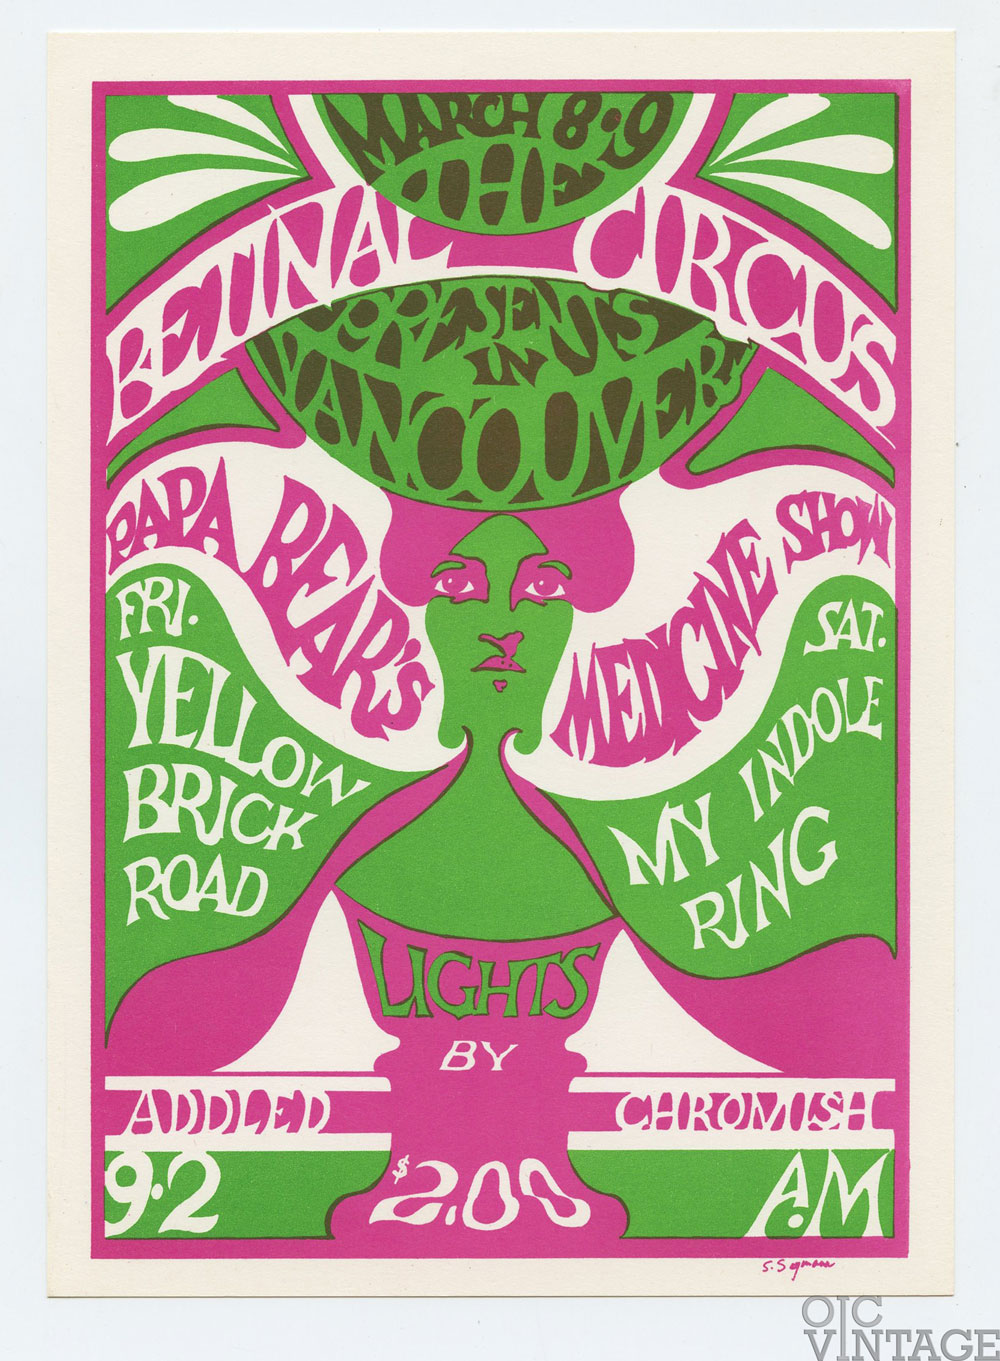 Retinal Circus Postcard 1966 1968 | Vintage Collectibles Concert Poster ...